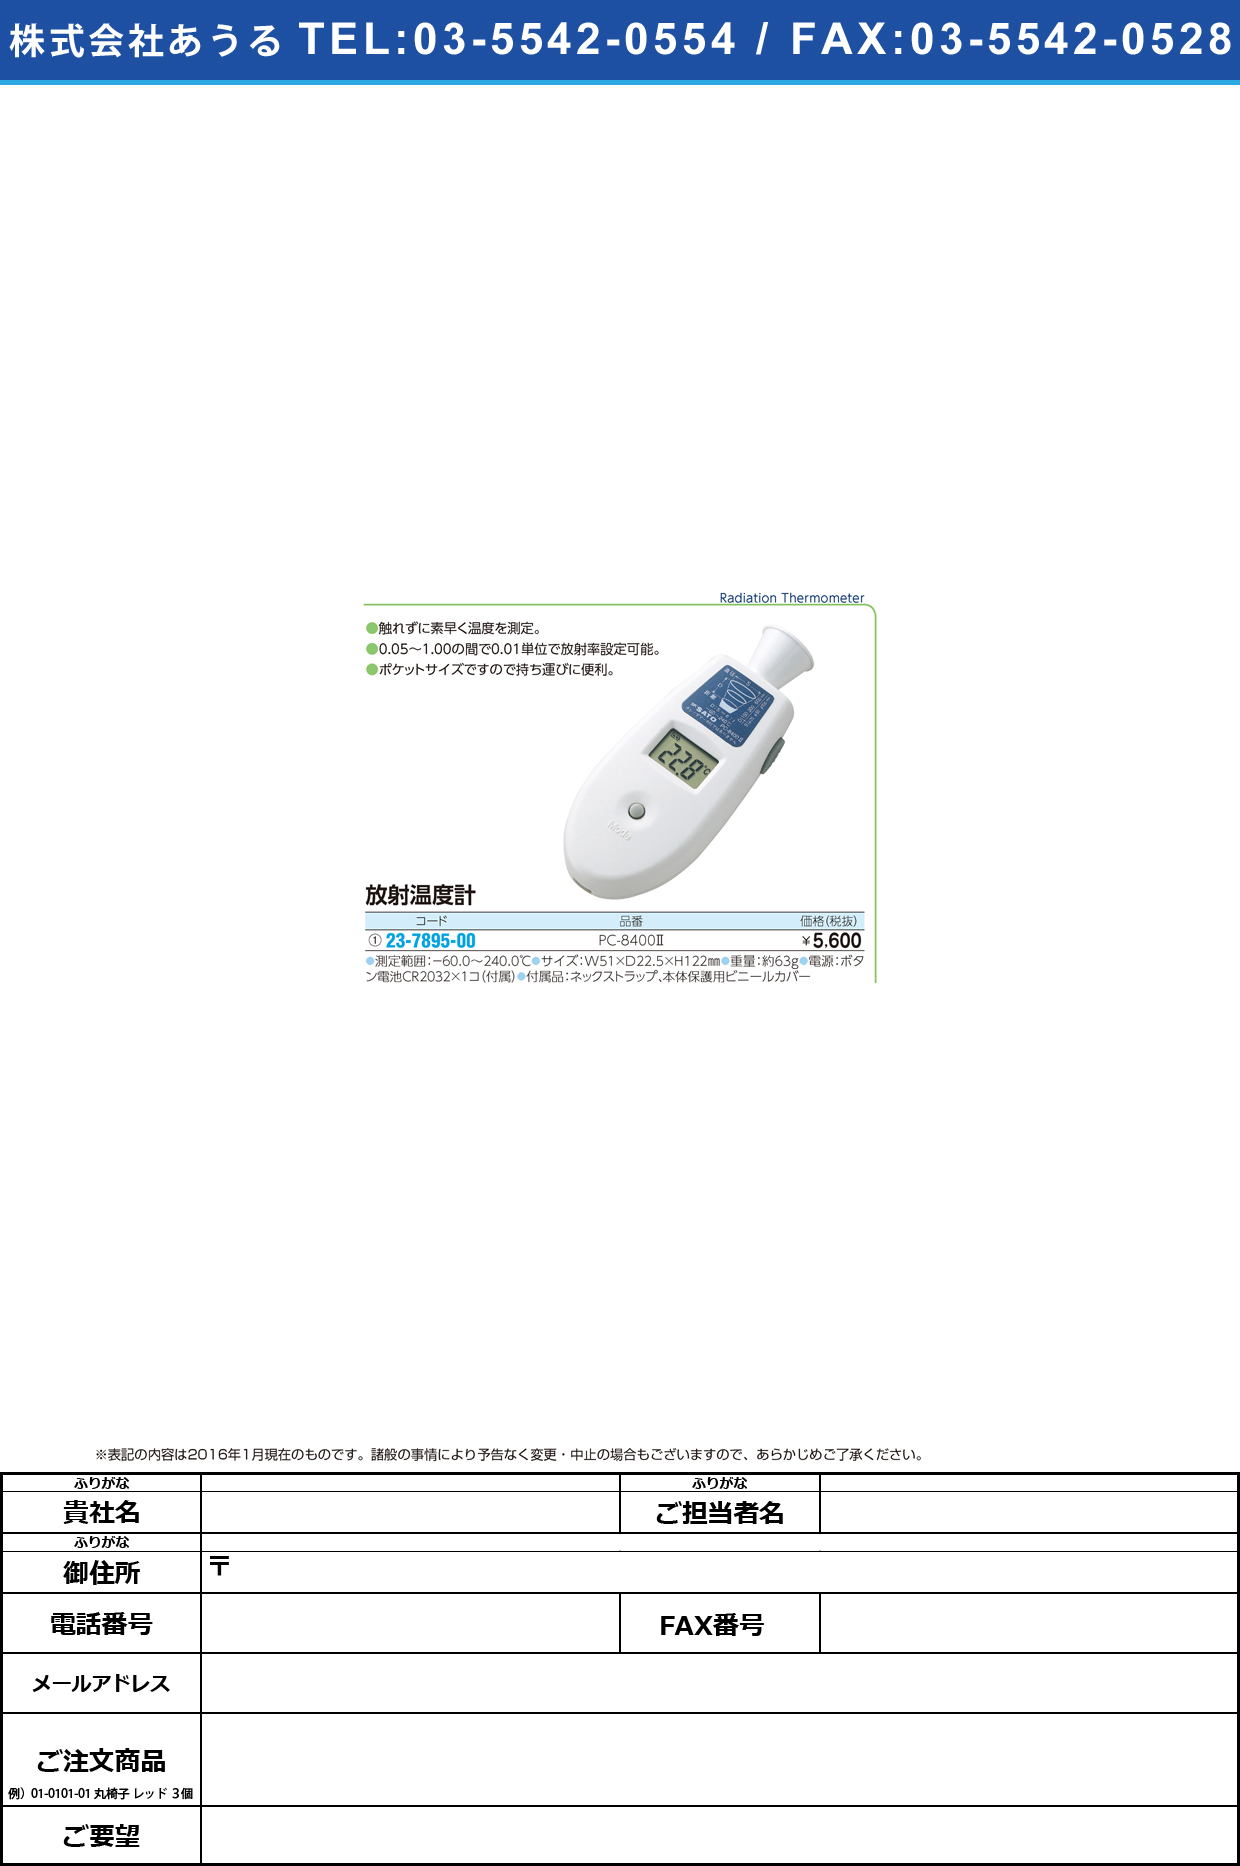 ポケット放射温度計 ﾎﾟｹｯﾄﾎｳｼｬｵﾝﾄﾞｹｲ PC-8400-2